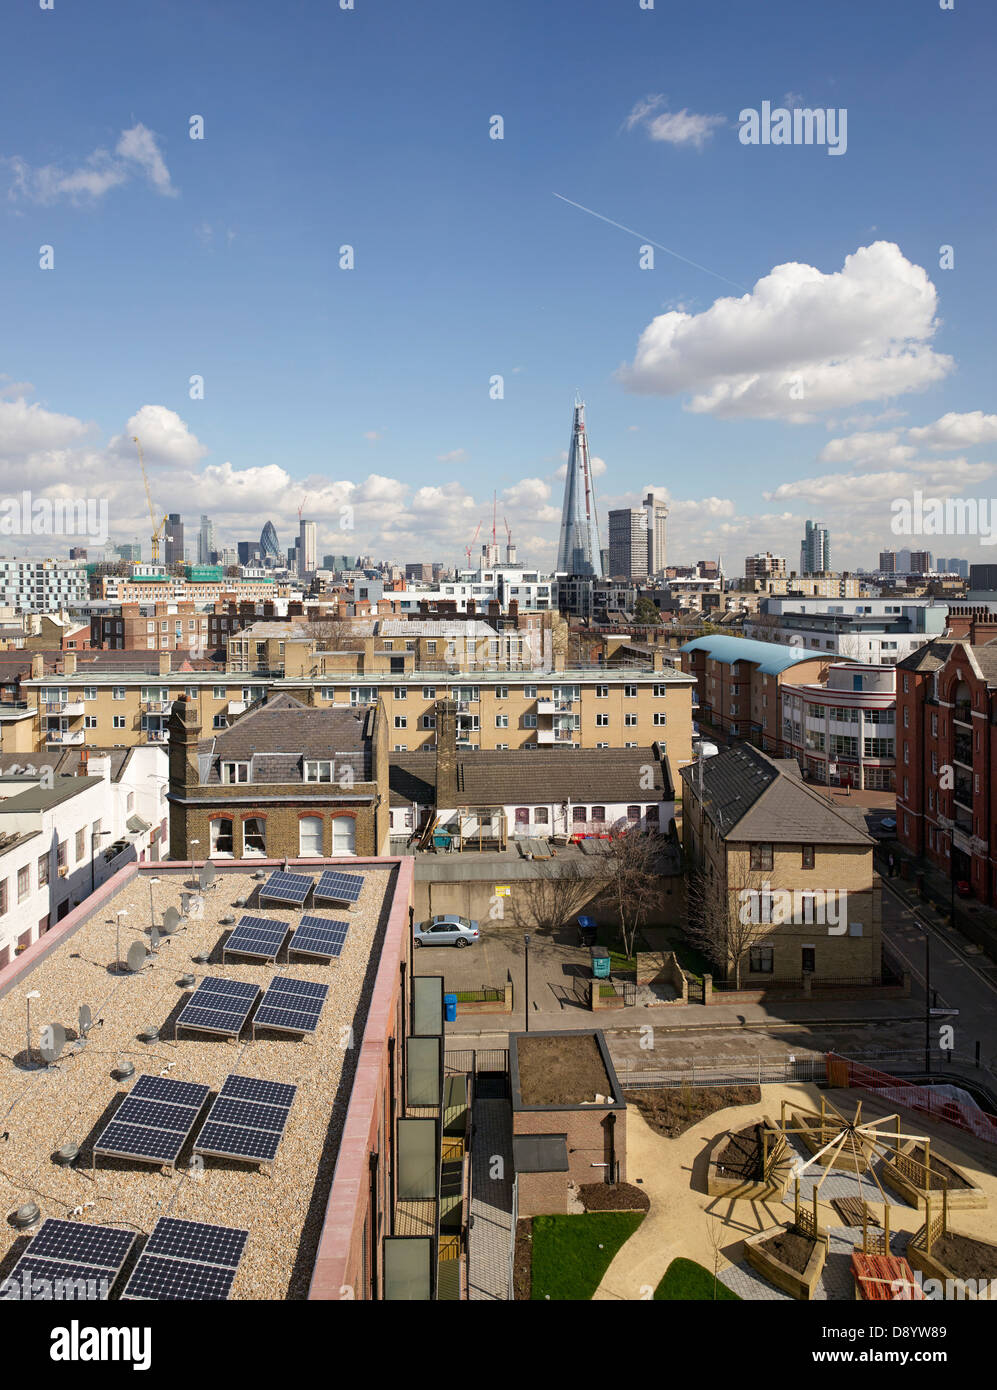 Bibliothek Straße erschwinglichem Wohnraum, London, Vereinigtes Königreich. Architekt: Metaphorm Architekten, 2012. Blick vom Dachgarten mit pho Stockfoto